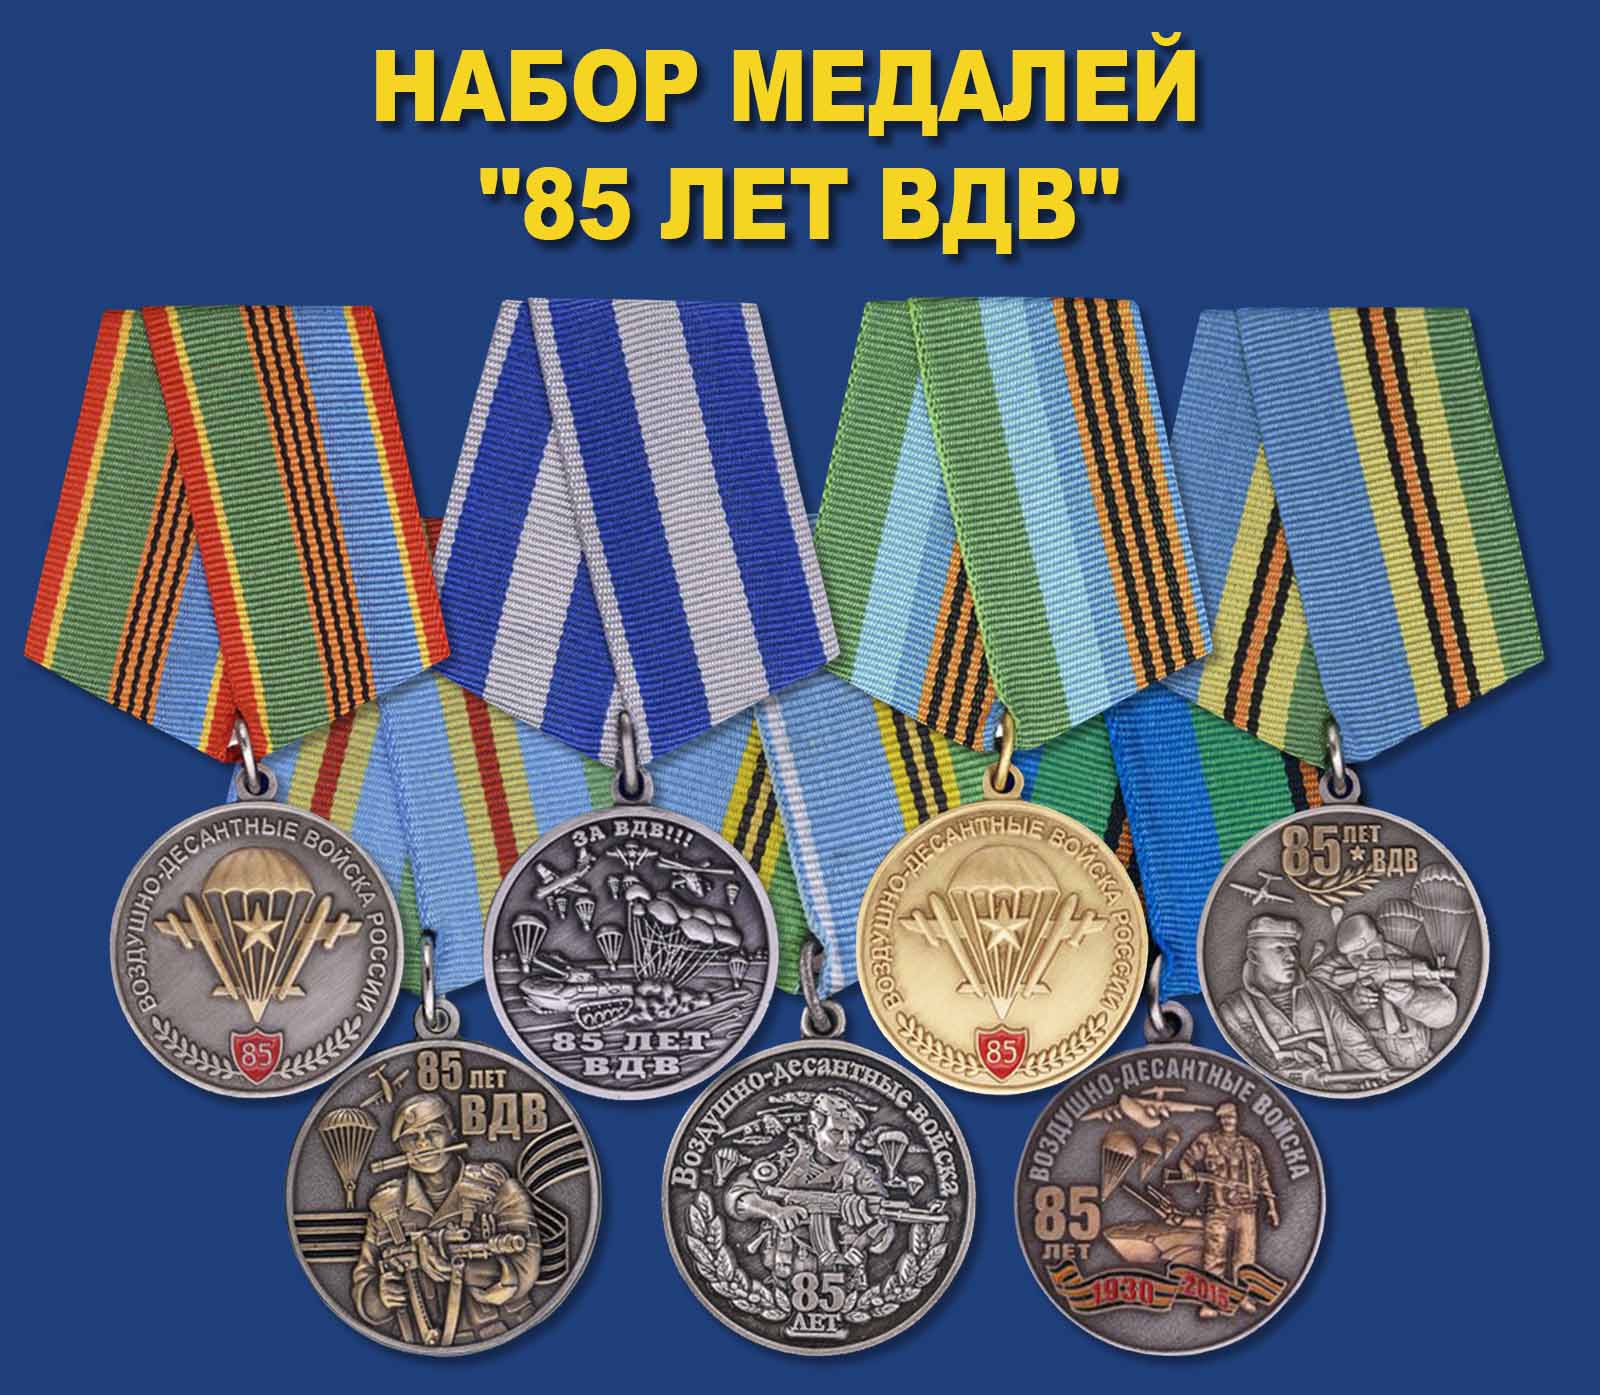 Купить коллекционный набор медалей "85 лет ВДВ"